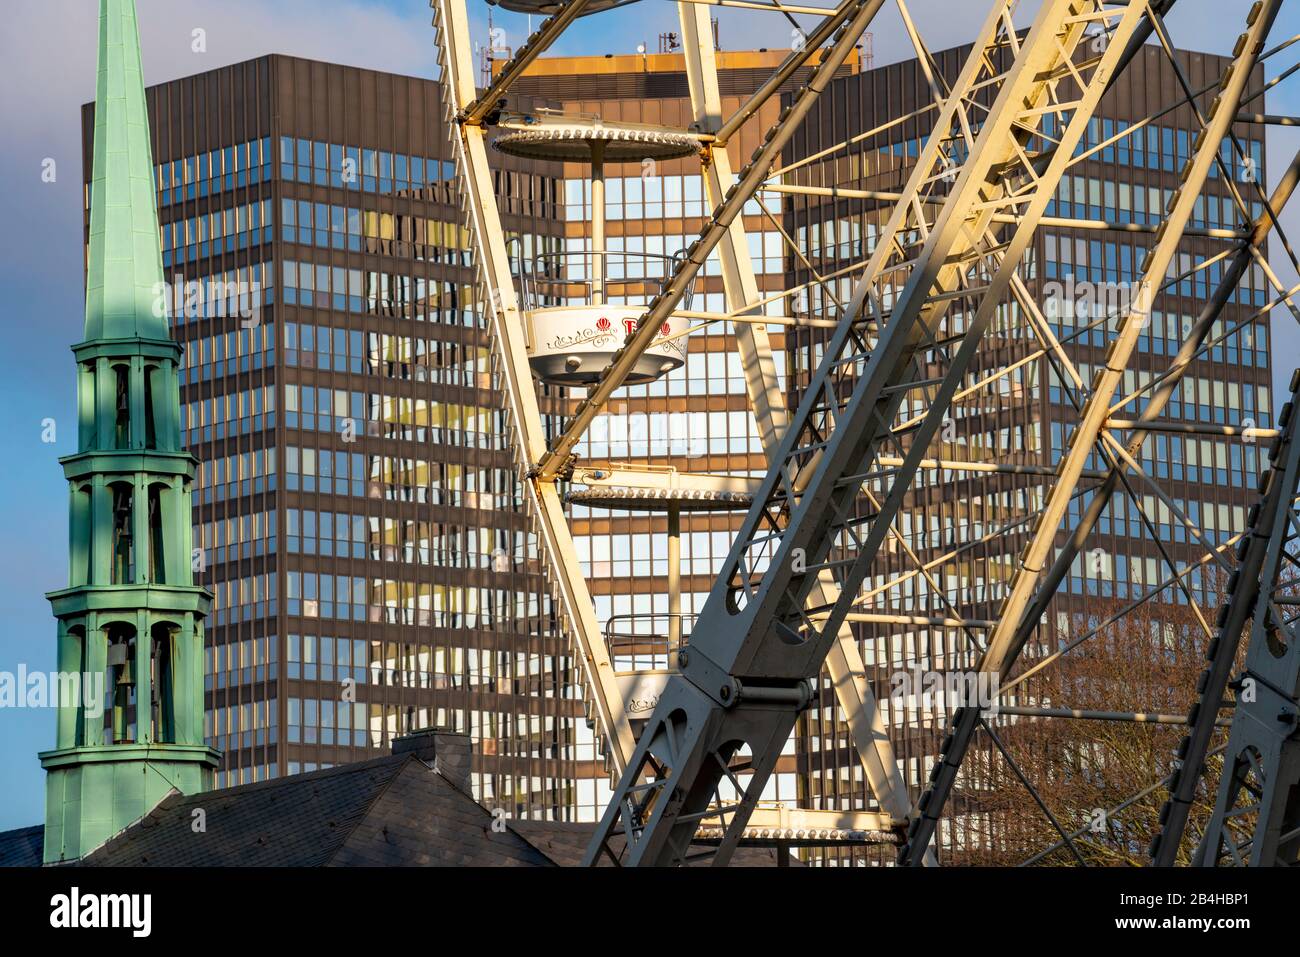 Riesenrad, mit offenen Gondeln, Blauer Himmel, auf dem Burgplatz en Essen, hinten das Essener Rathaus, Turm des Essener Doms, Foto de stock